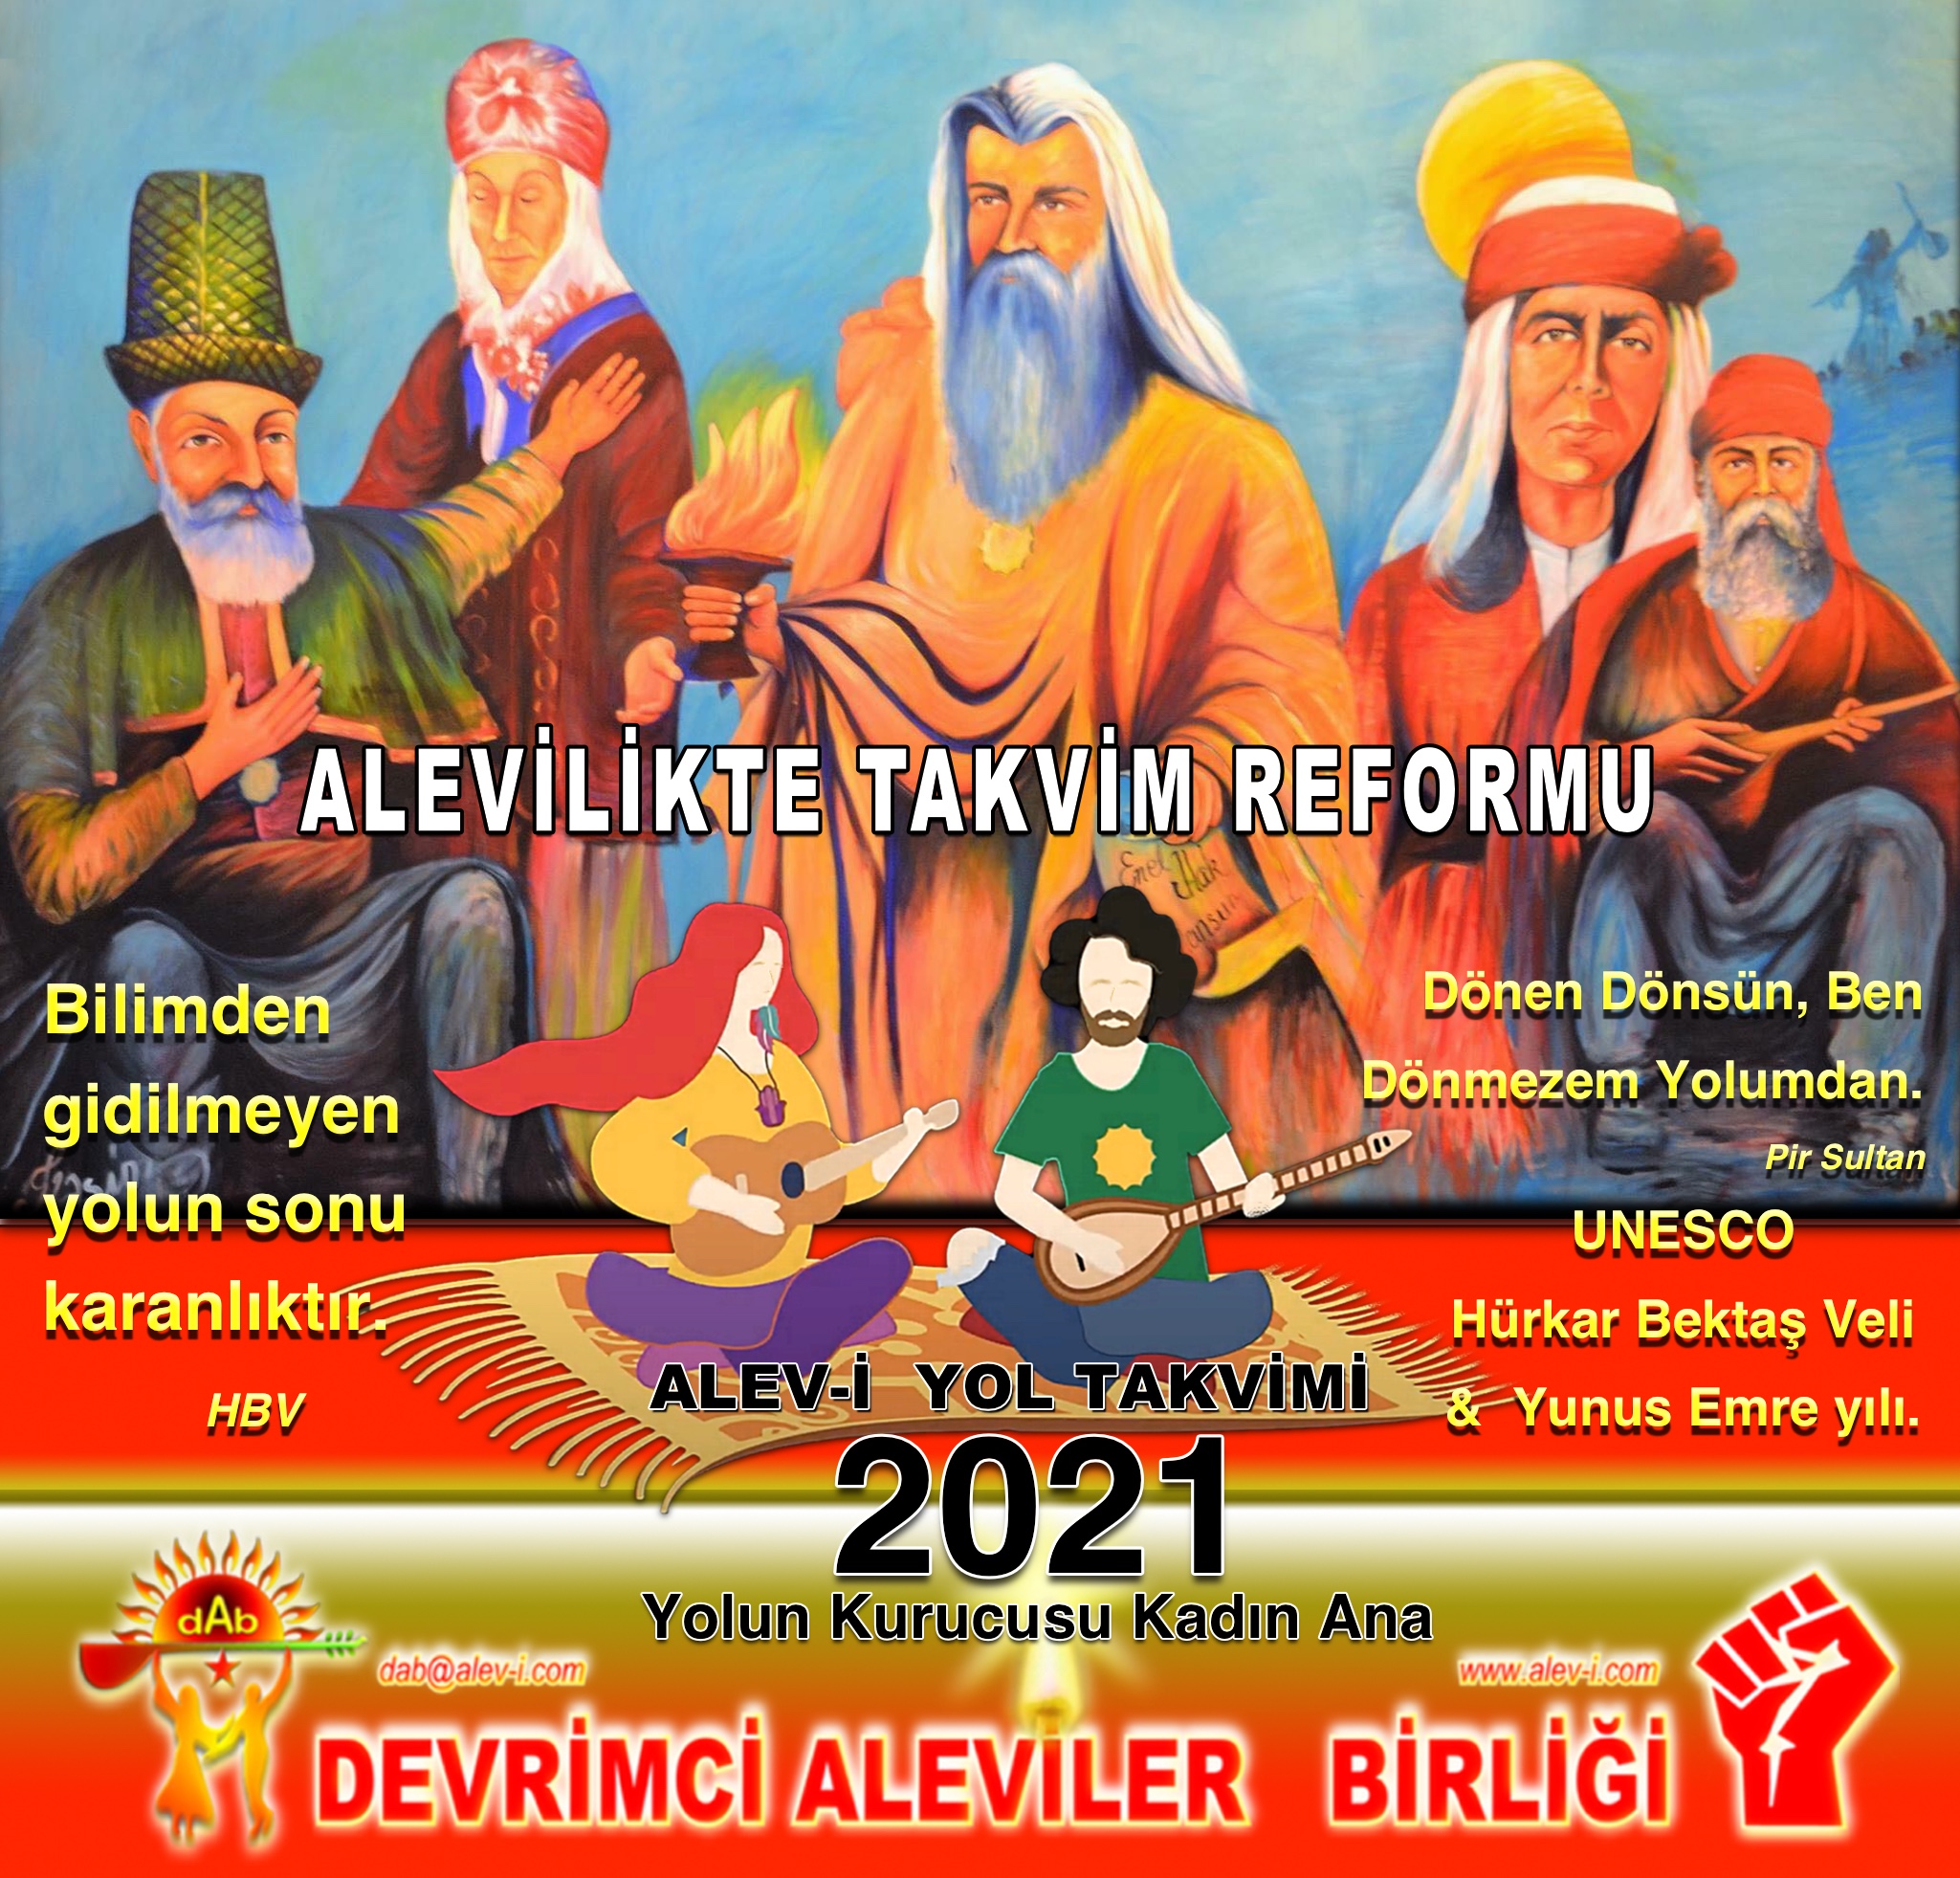 0 Alevi HBV mansur kadın ana Alevi bektaşi kızılbaş pir sultan cem alevilikte takvim reformu 2021